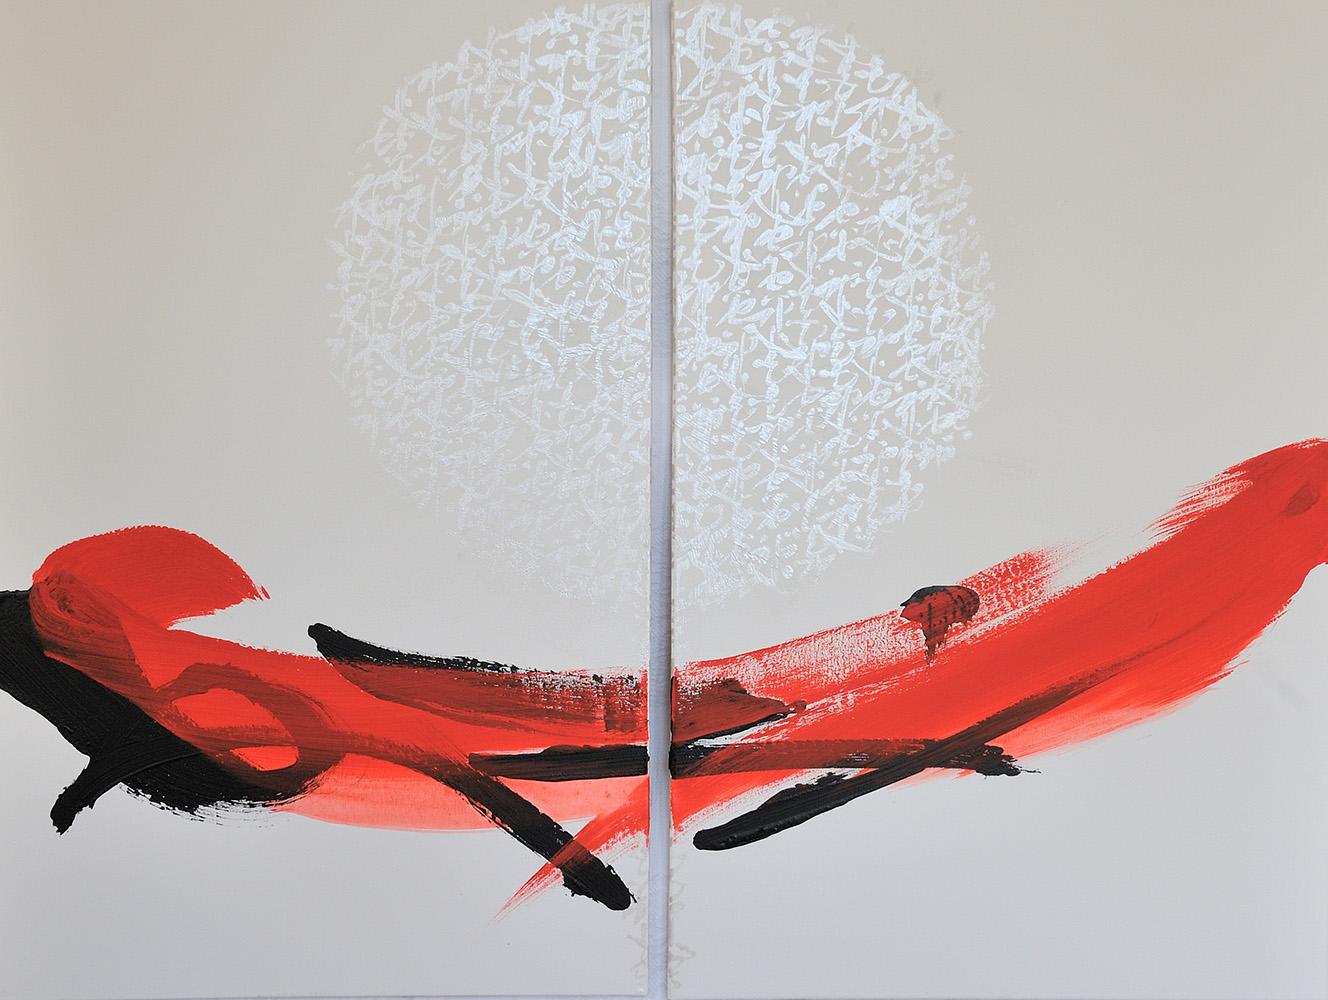 TN666-D est un diptyque unique de l'artiste contemporain japonais Hachiro Kanno. La peinture est réalisée à l'encre et à l'acrylique sur toile. Les dimensions sont de 100 × 130 cm (39.4 × 51.2 in). Ce diptyque est composé de deux peintures mesurant